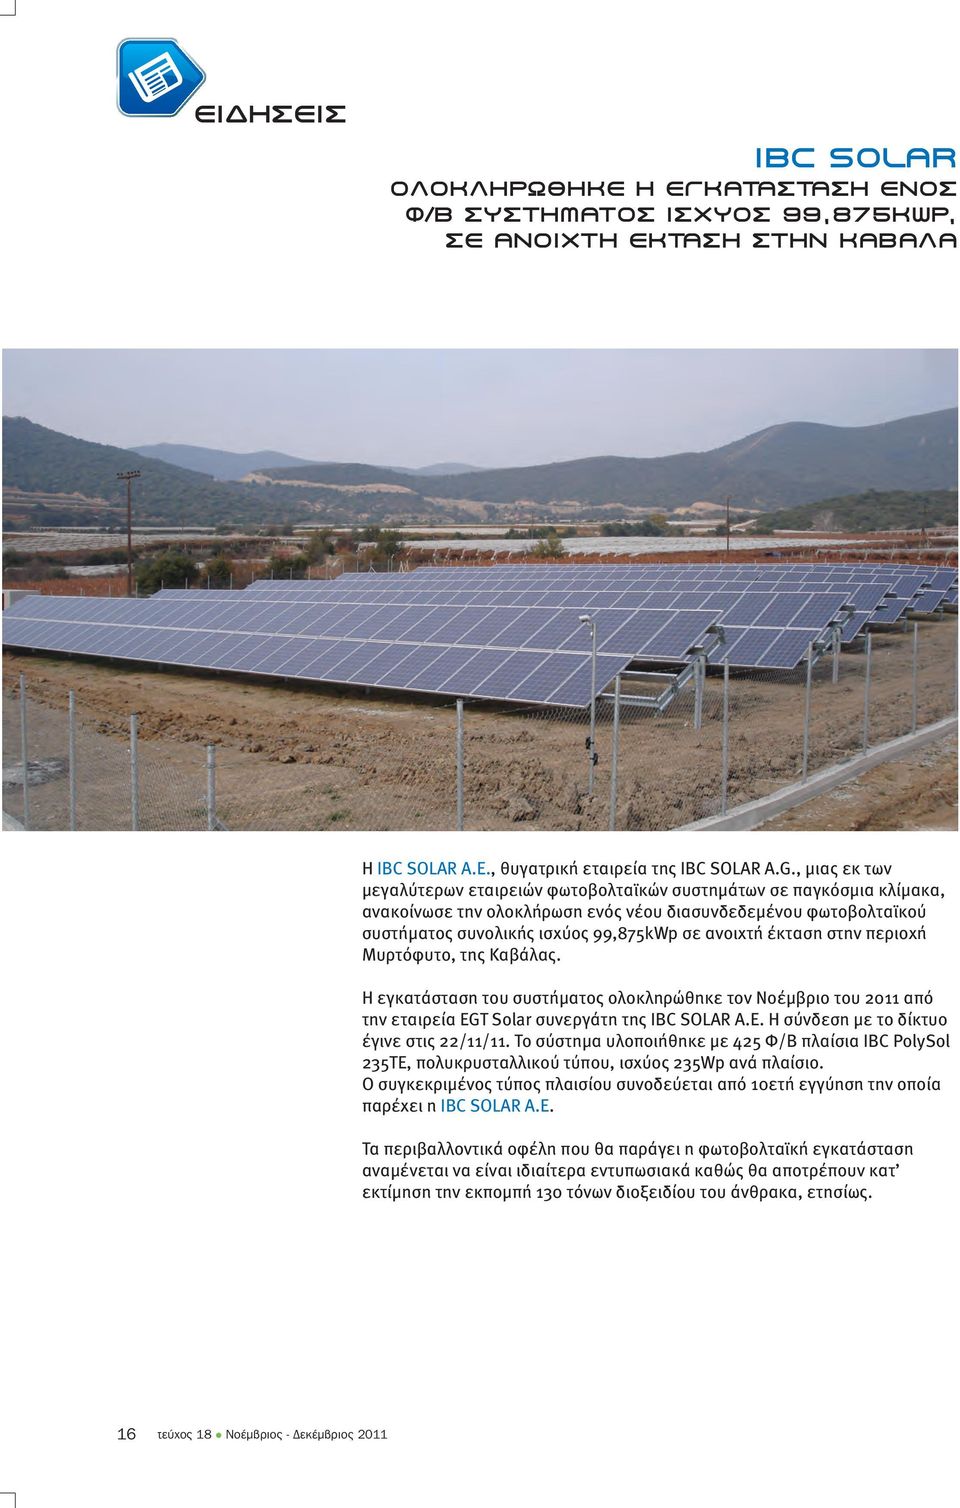 έκταση στην περιοχή Μυρτόφυτο, της Καβάλας. Η εγκατάσταση του συστήµατος ολοκληρώθηκε τον Νοέµβριο του 2011 από την εταιρεία EGT Solar συνεργάτη της IBC SOLAR A.E. Η σύνδεση µε το δίκτυο έγινε στις 22/11/11.